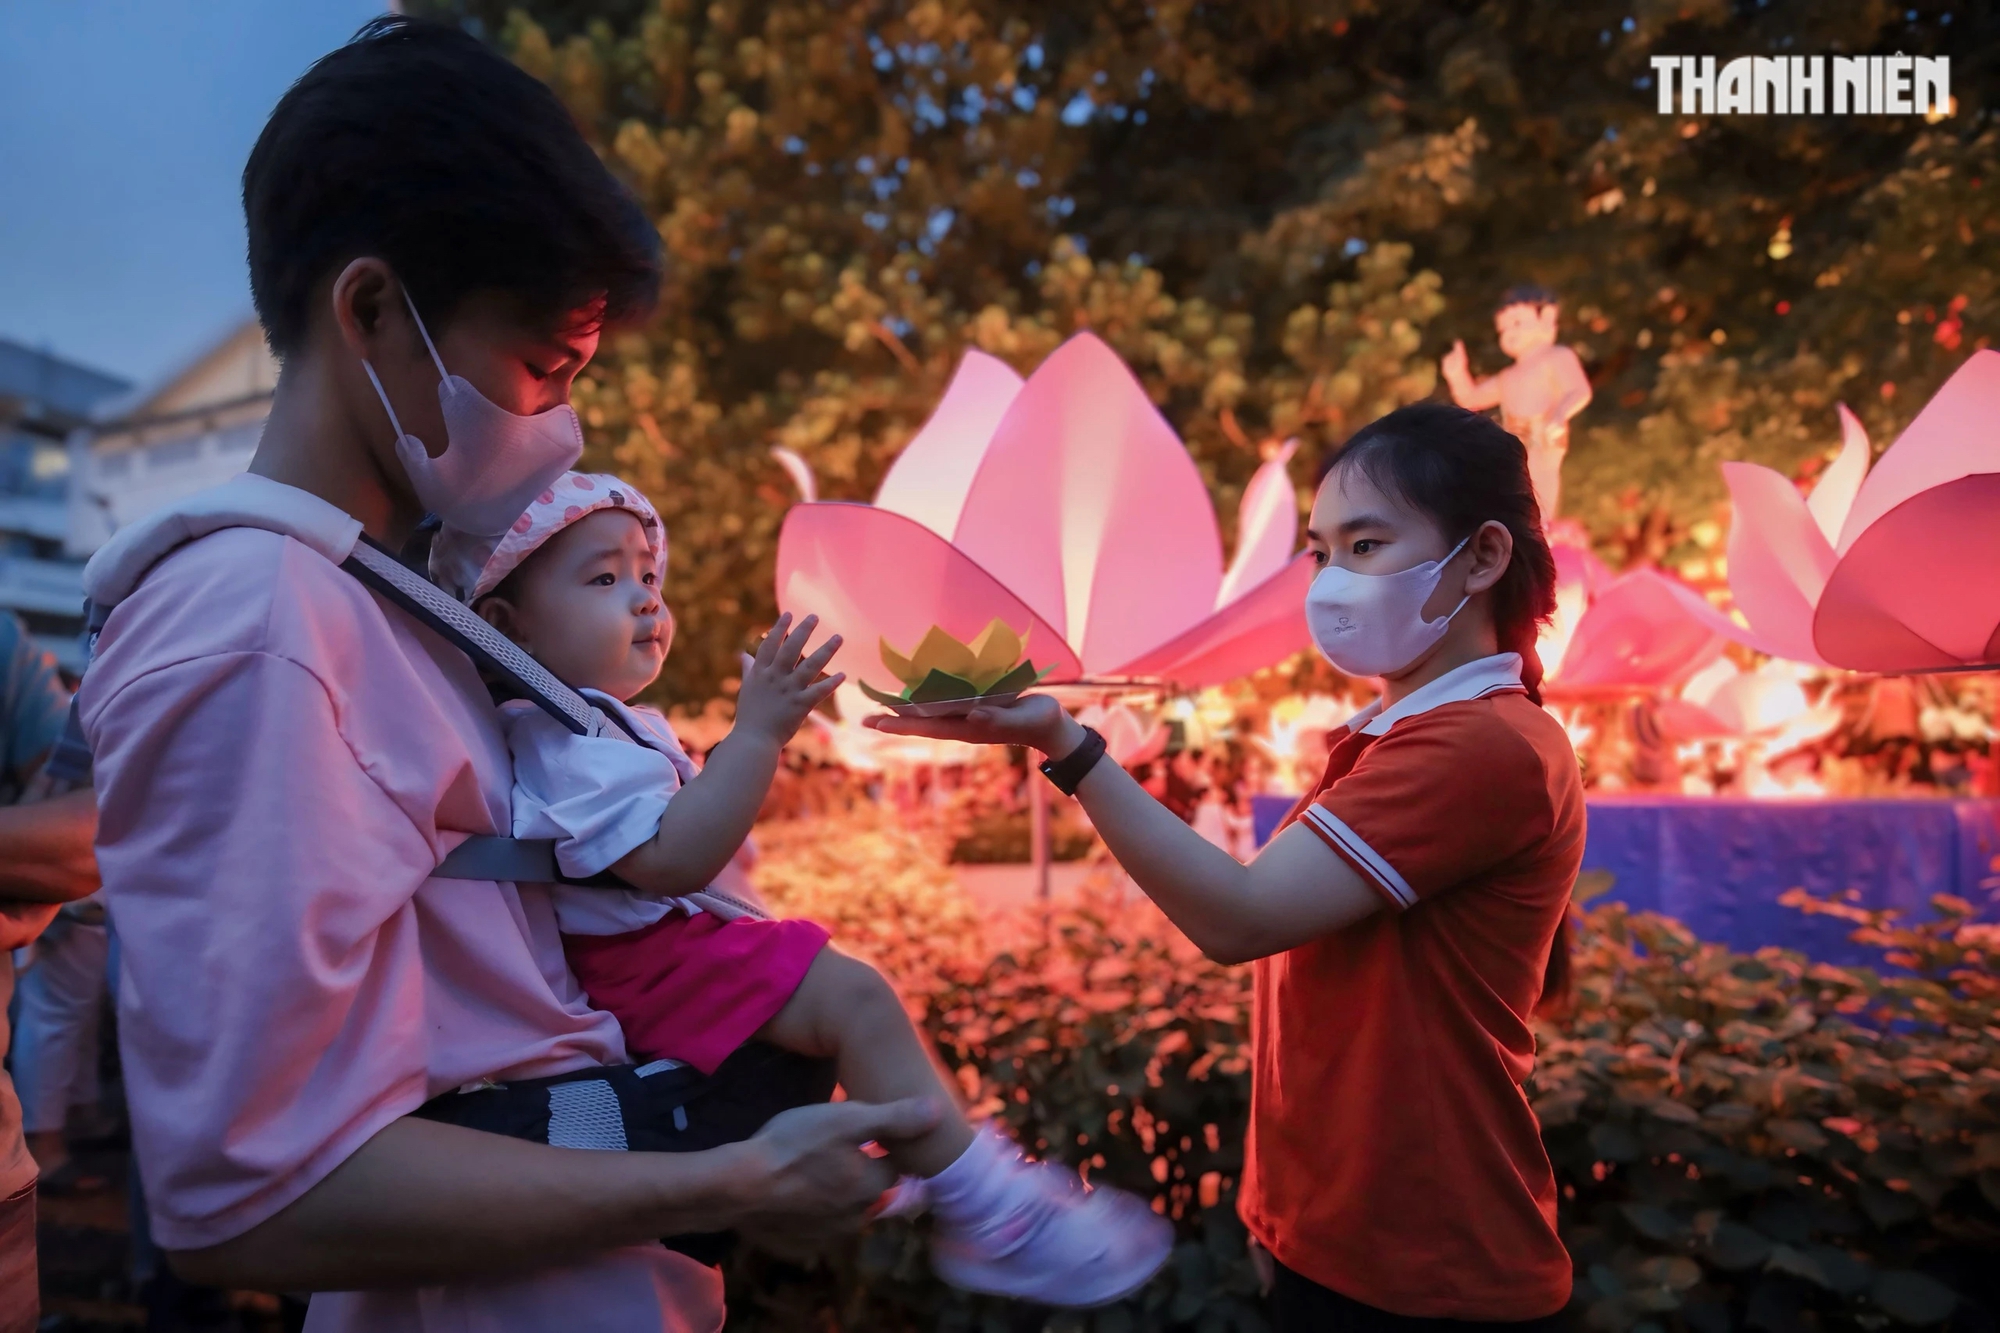 Nhiều gia đình đưa con nhỏ đến chùa Pháp Hoa để cầu sức khoẻ, hi vọng gia đình có một năm thật an lành hạnh phúc